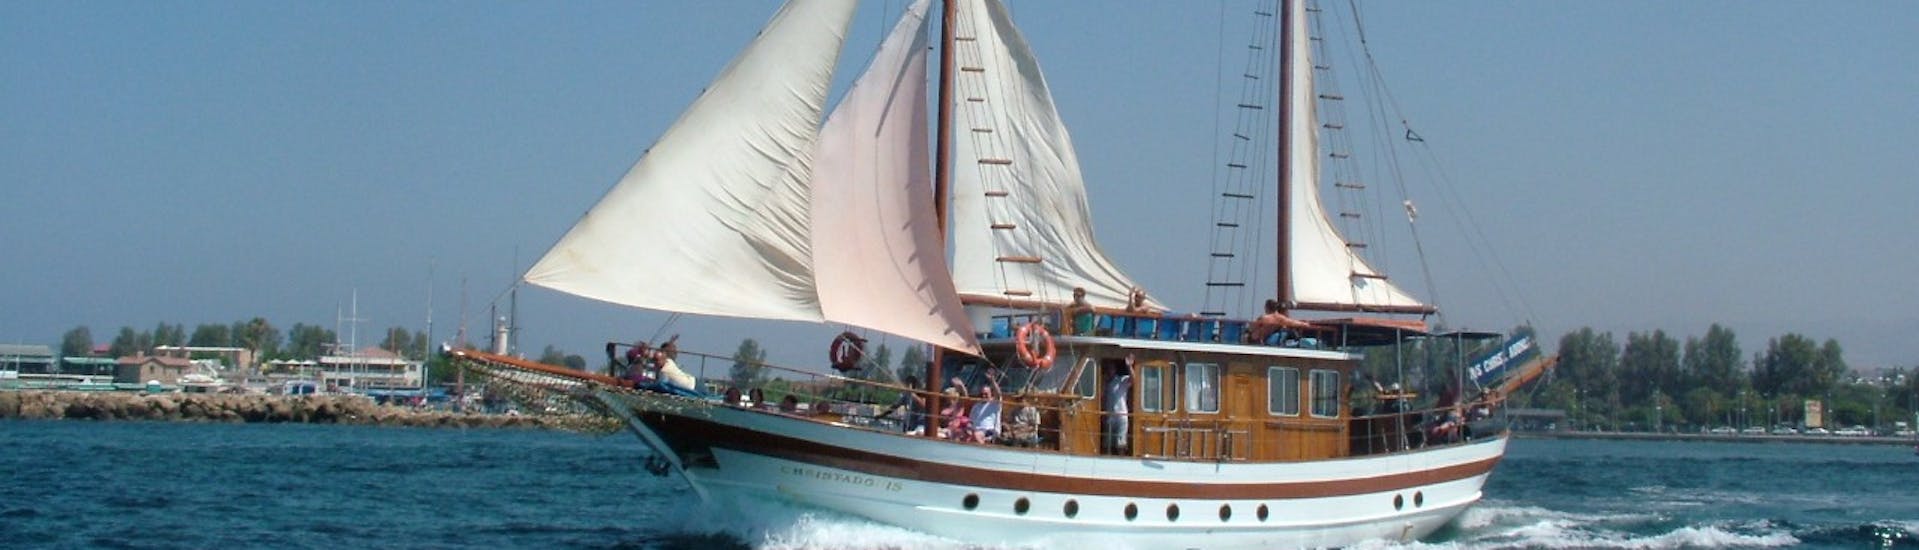 Photo prise pendant la balade en bateau à voile de Paphos vers la côte ouest de Chypre avec Venus Sea Cruises.